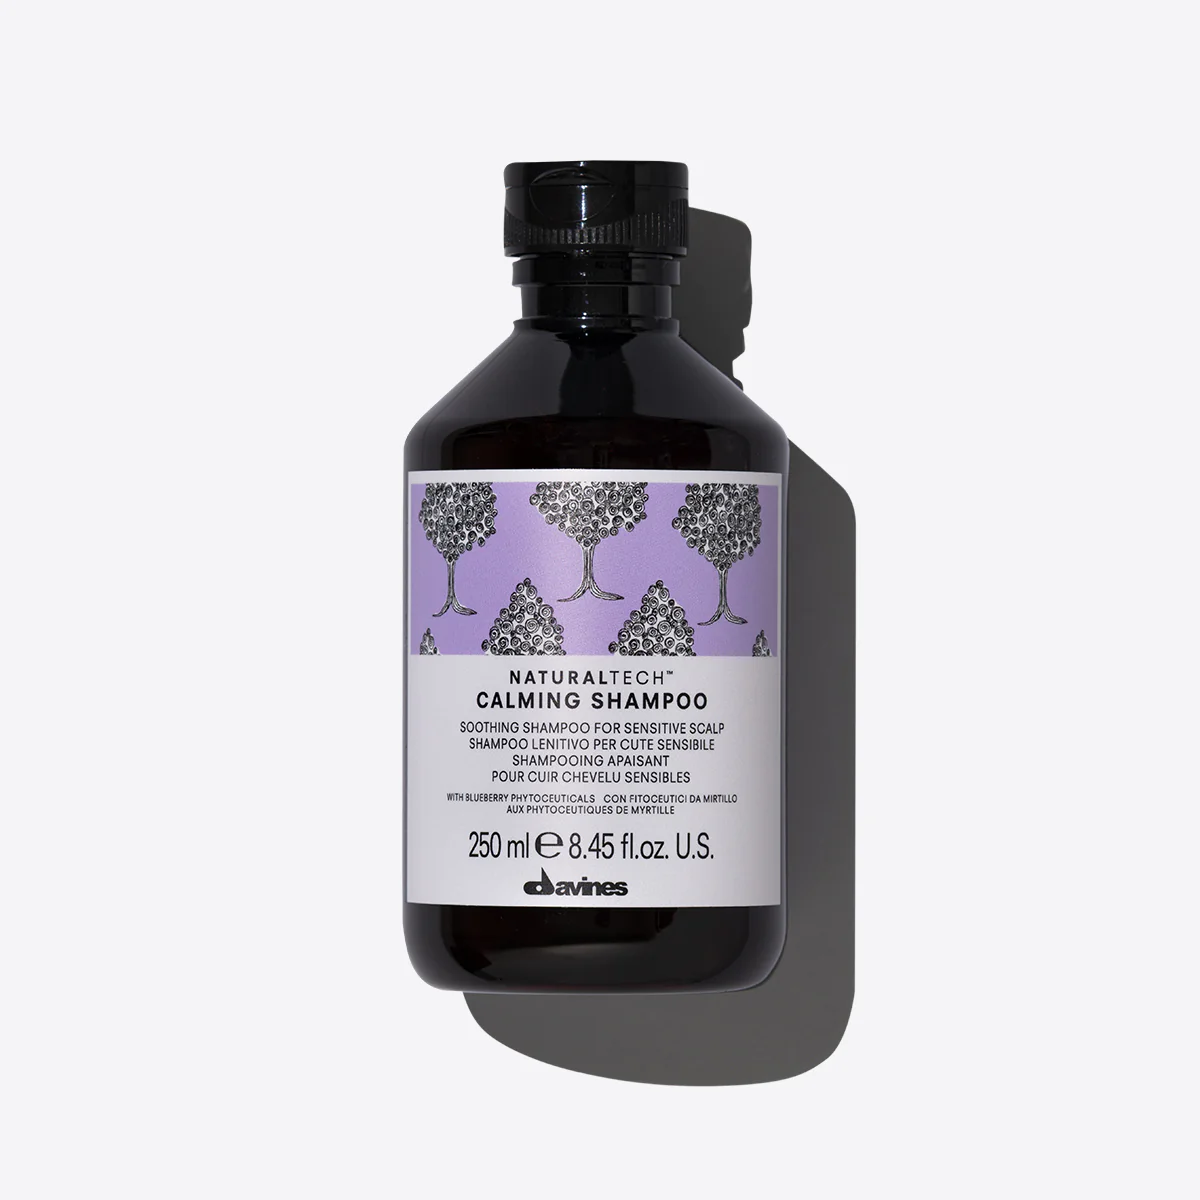 NaturalTech Calming Shampoo - Успокаивающий шампунь для чувствительной кожи головы , объем 250 мл